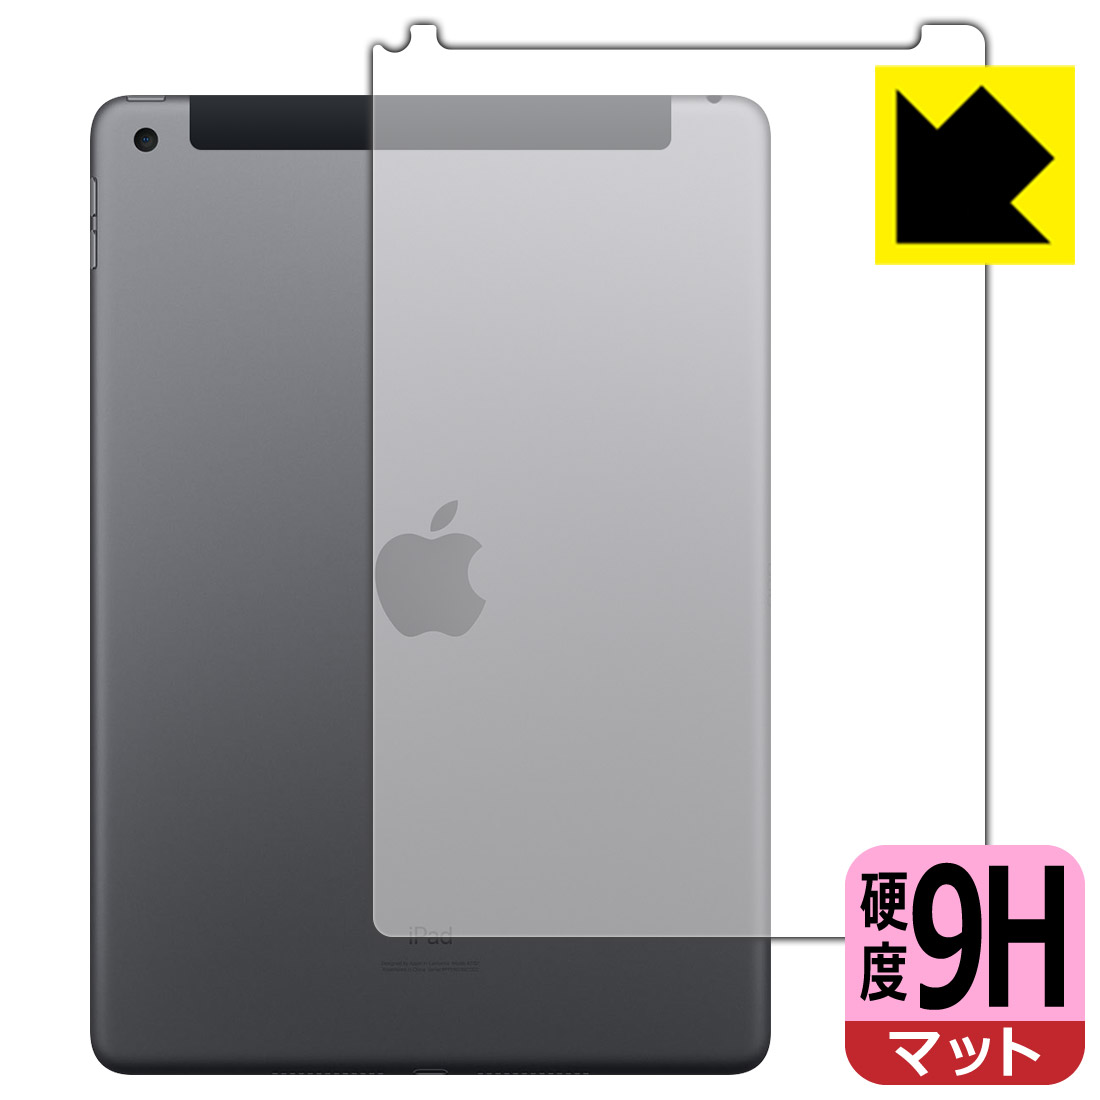 9H高硬度【反射低減】保護フィルム iPad (第8世代・2020年発売モデル) 背面のみ 【Wi-Fi + Cellularモデル】 日本製 自社製造直販